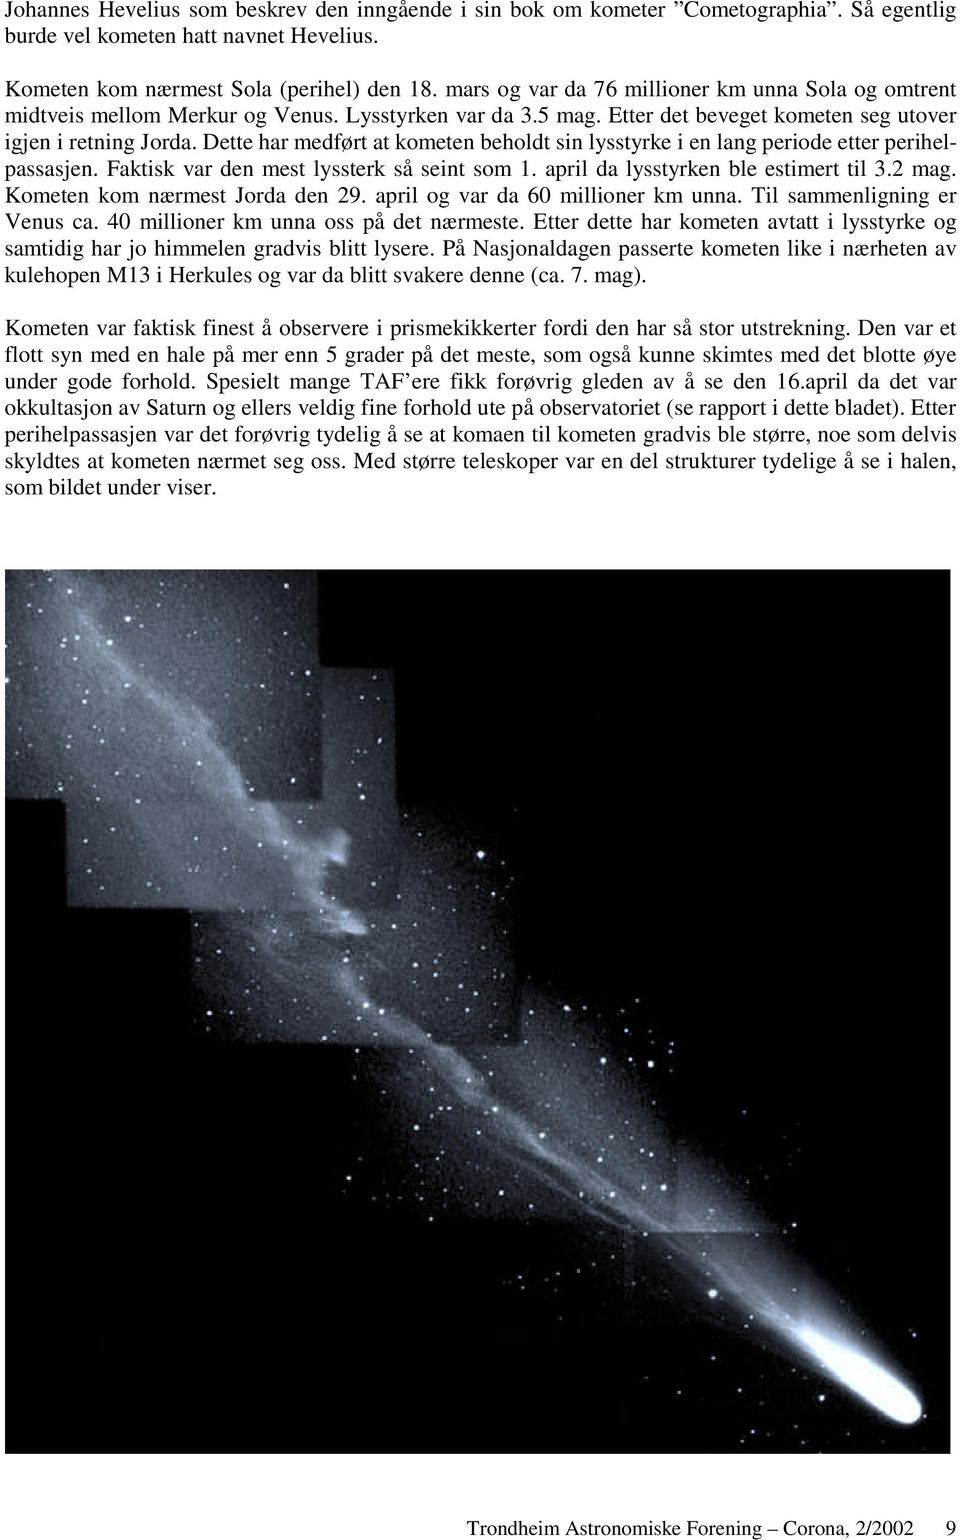 Dette har medført at kometen beholdt sin lysstyrke i en lang periode etter perihelpassasjen. Faktisk var den mest lyssterk så seint som 1. april da lysstyrken ble estimert til 3.2 mag.